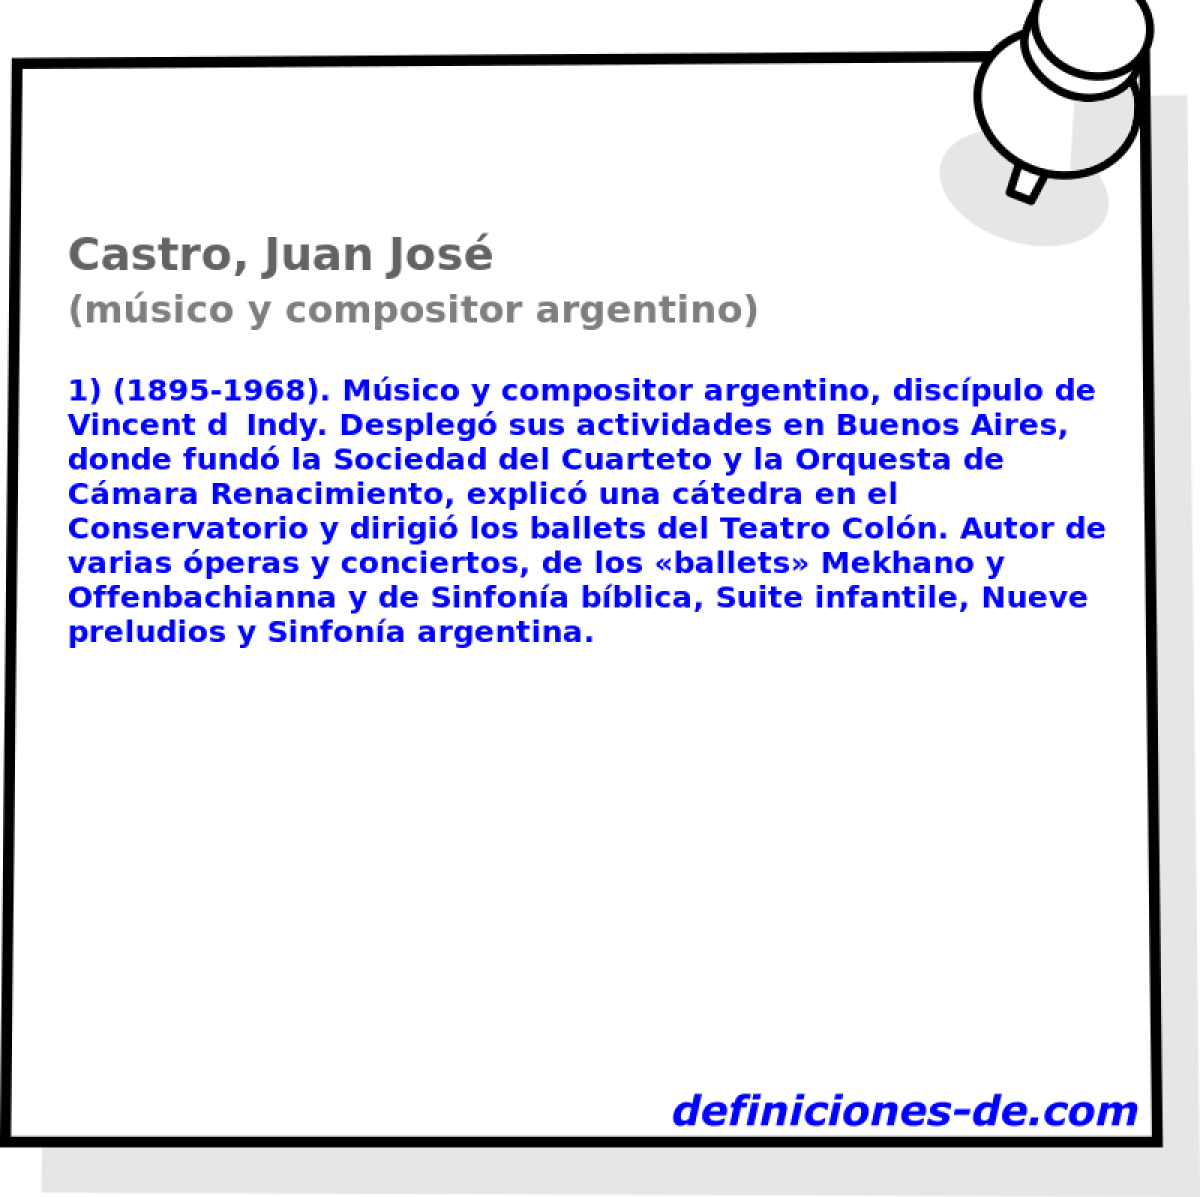 Castro, Juan Jos (msico y compositor argentino)